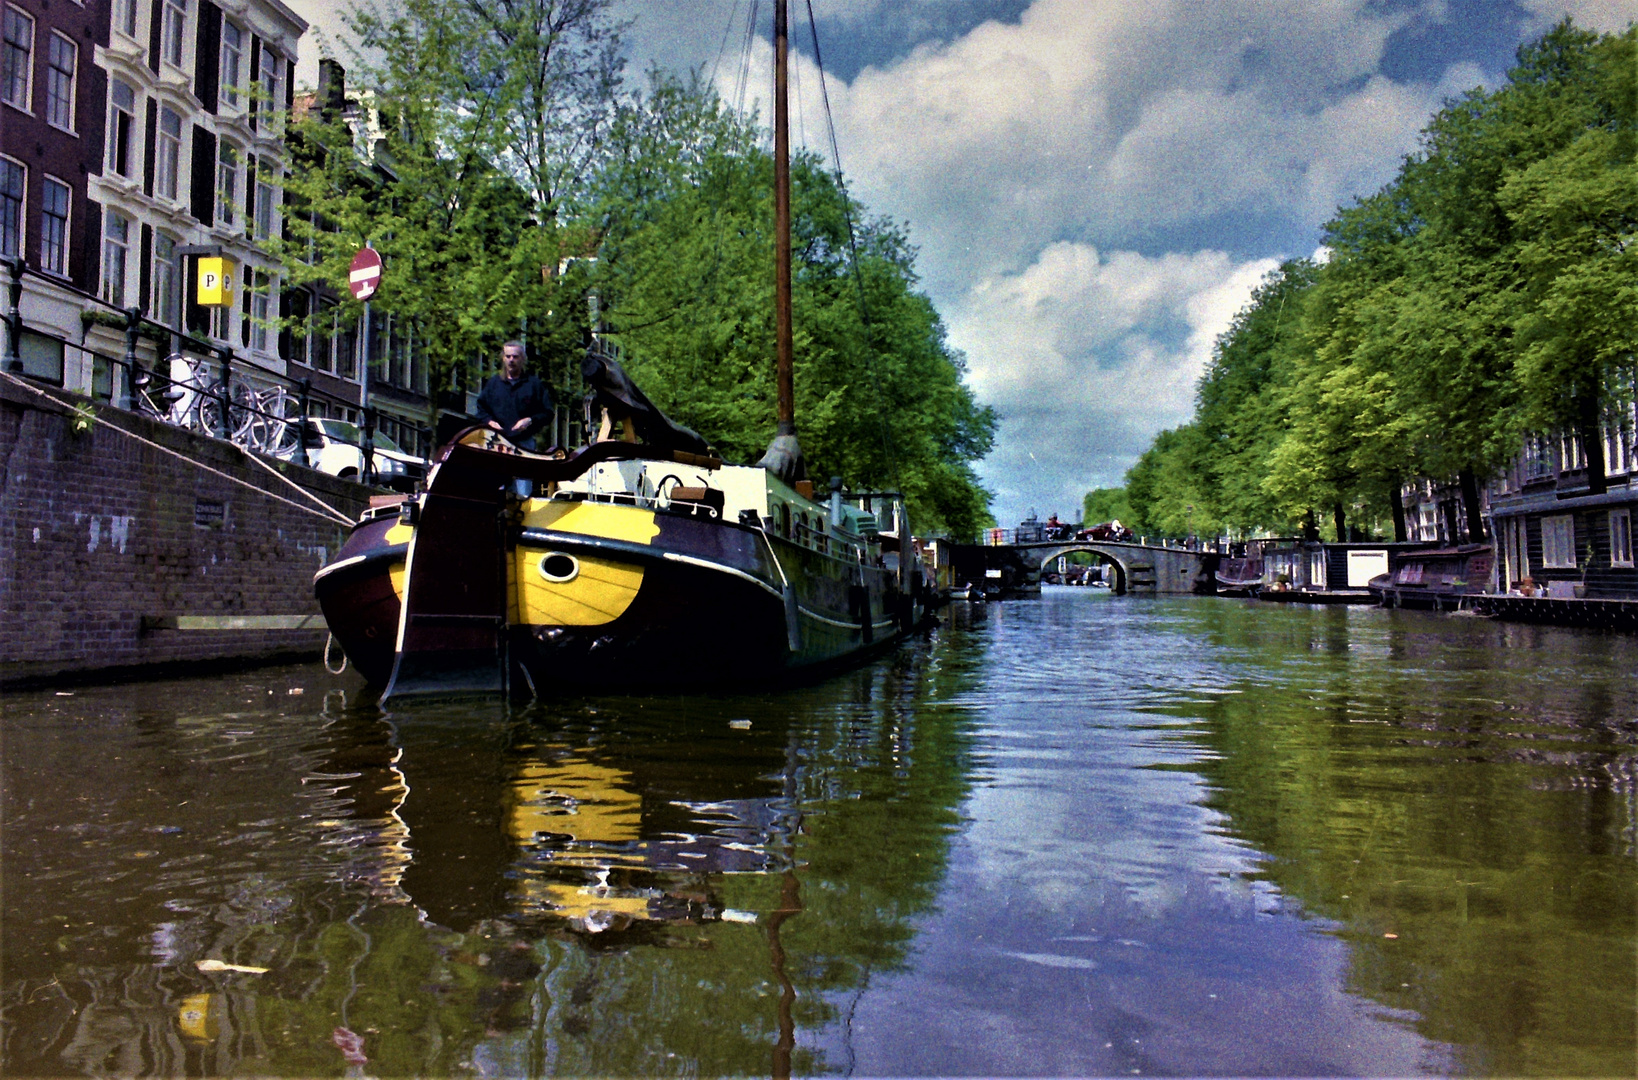 Old Amsterdam im Spiegel der Grachten